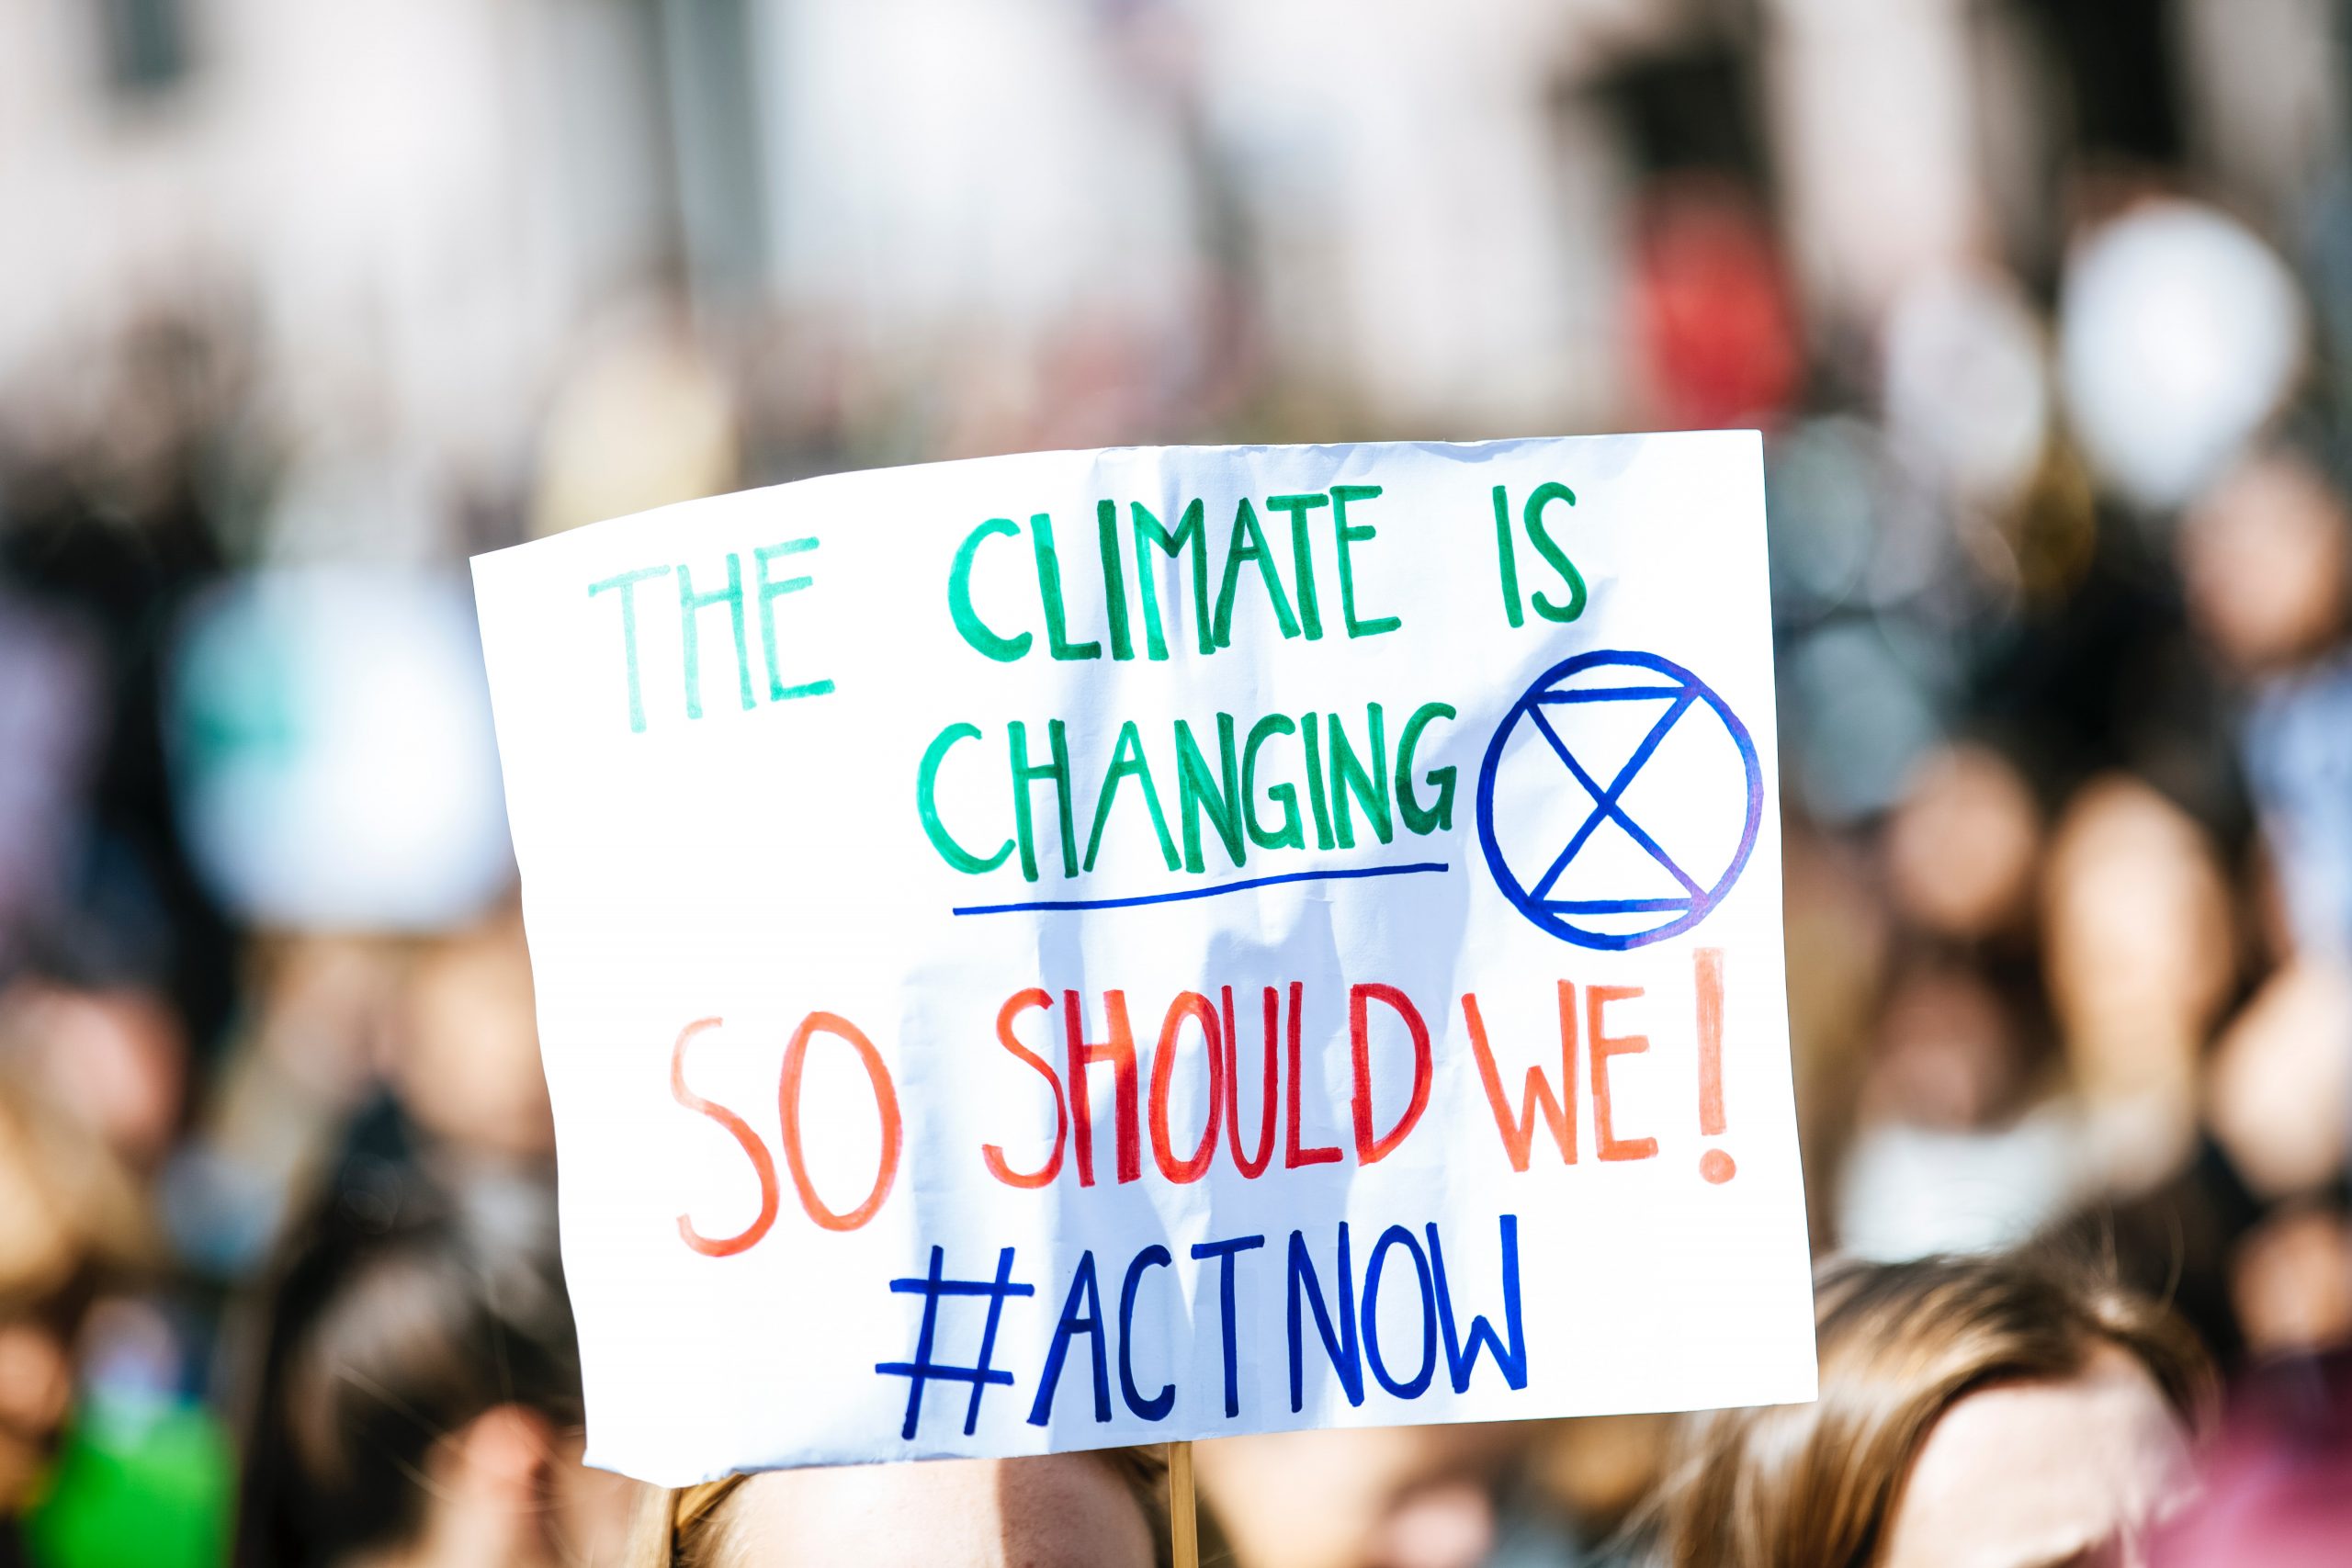 COP26: Dunia menanti janji negara-negara untuk cegah bencana iklim